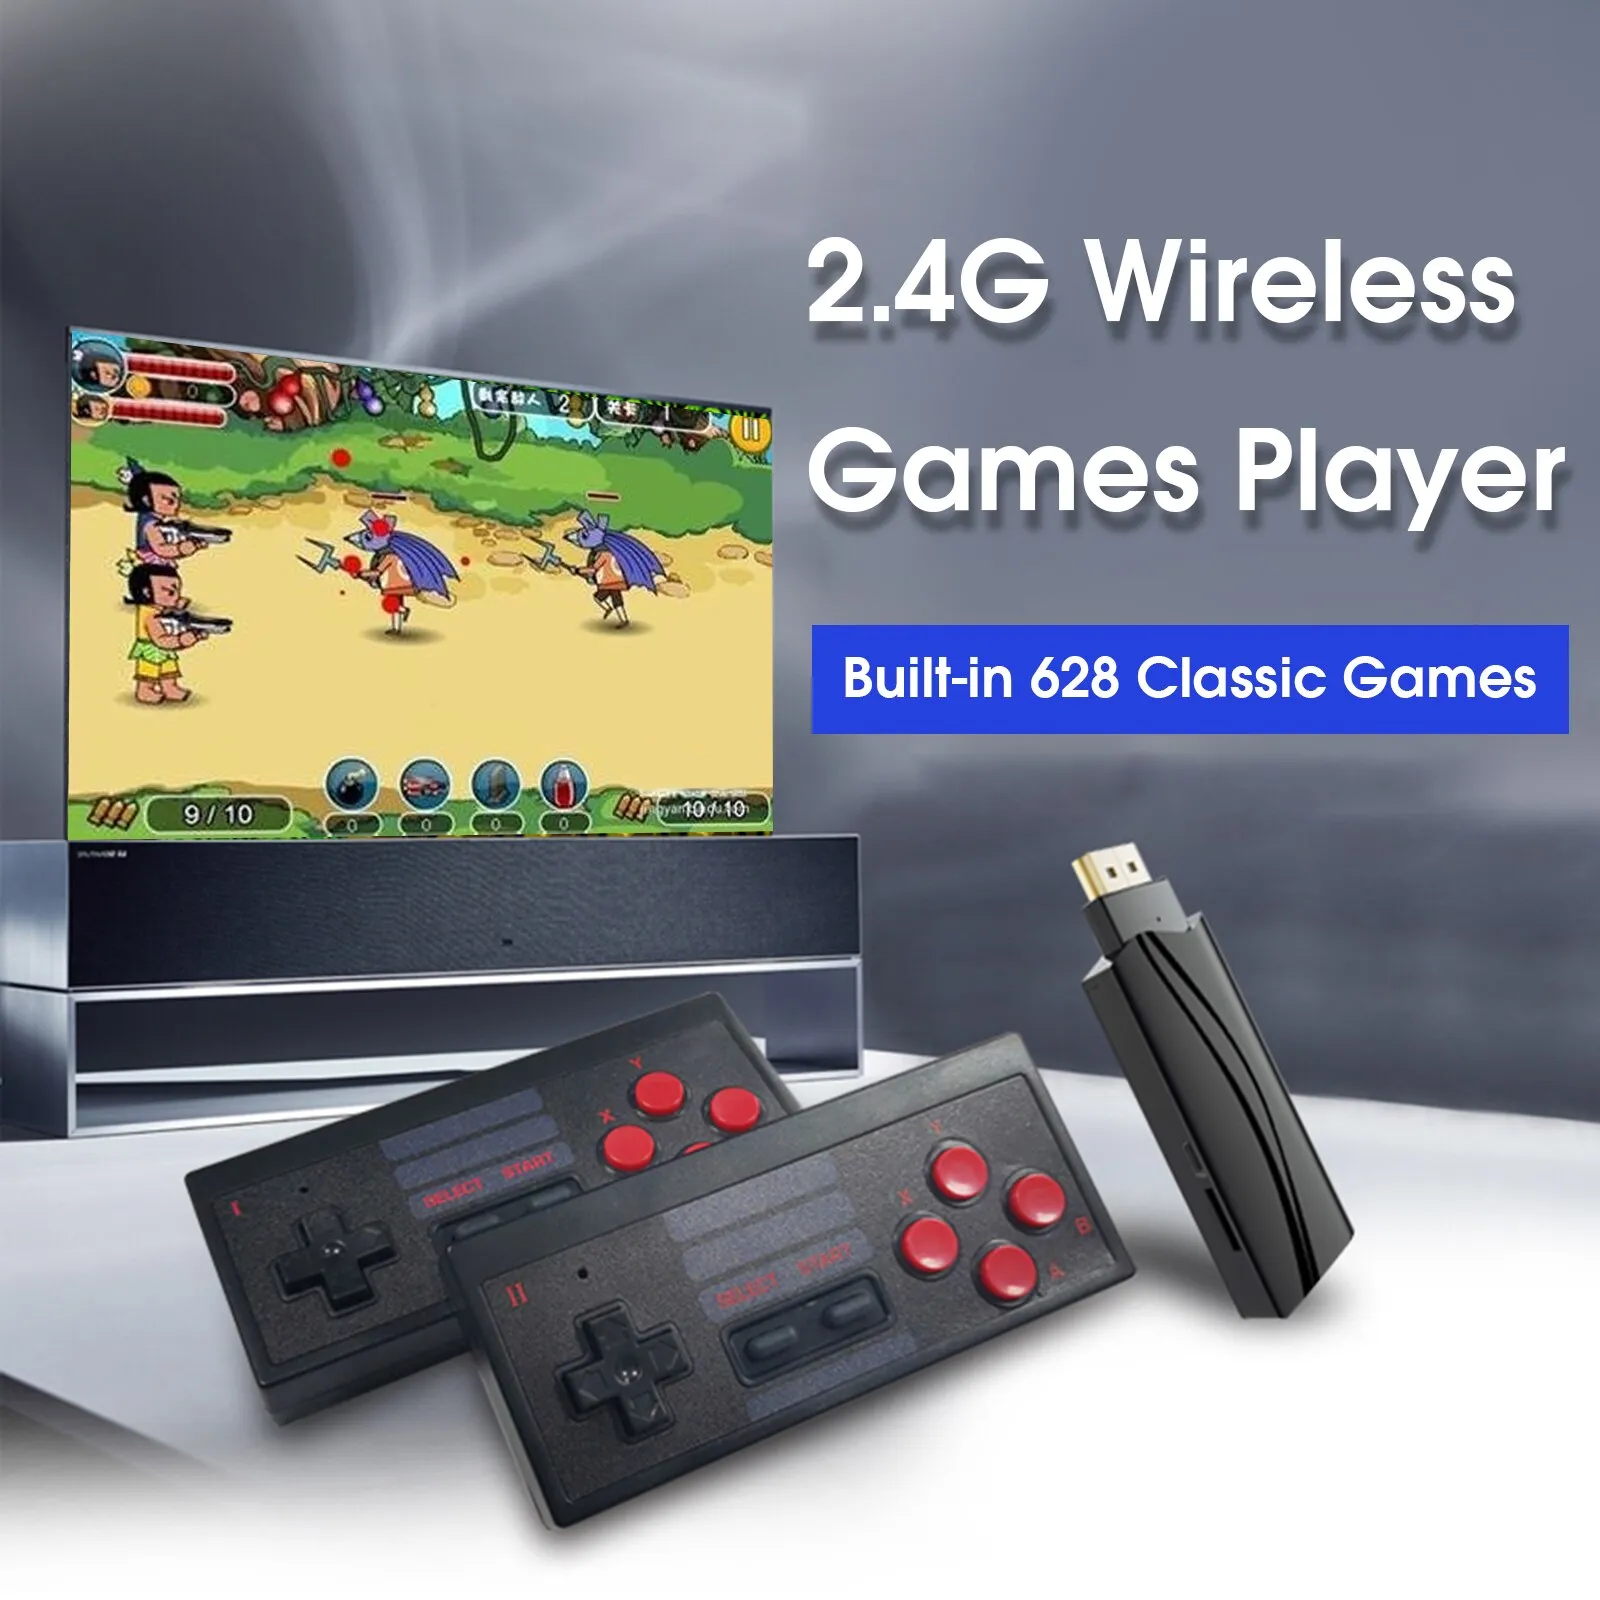 Console per videogiochi retrò 2.4G Wireless Game Player Controller portatile Uscita HD Built-in 628 giochi classici Dual Players